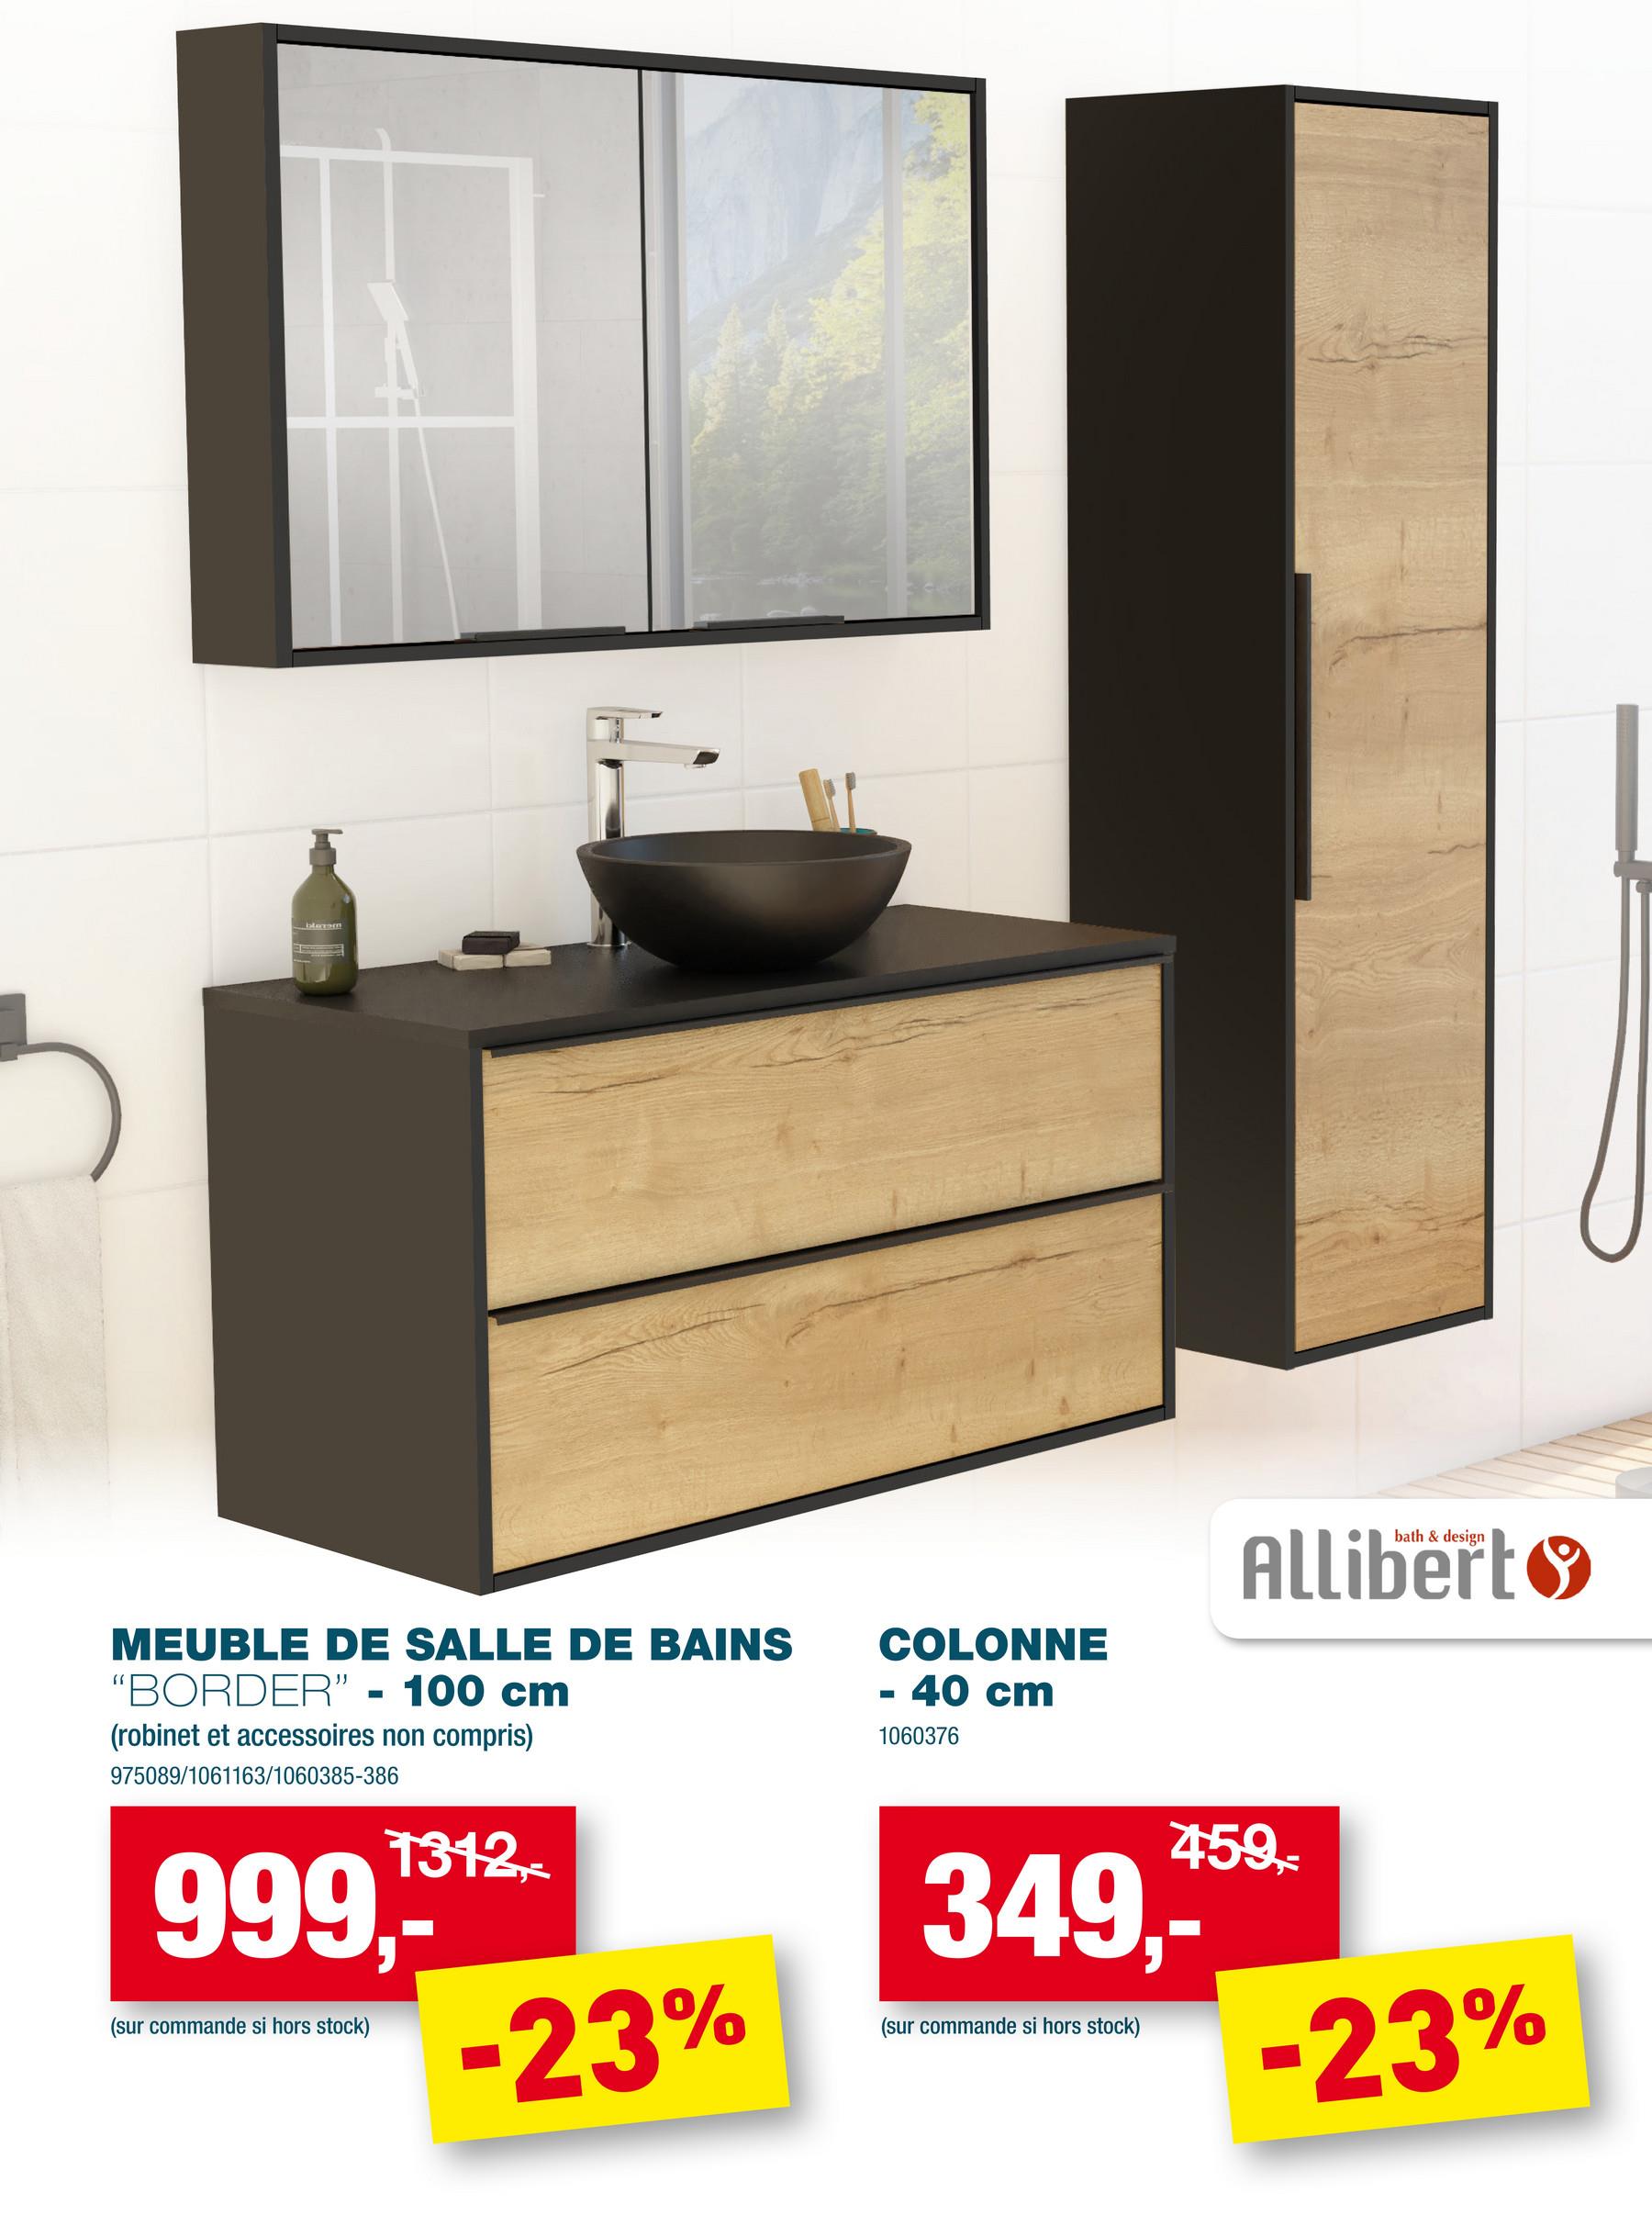 blatn
MEUBLE DE SALLE DE BAINS
"BORDER" - 100 cm
(robinet et accessoires non compris)
975089/1061163/1060385-386
1312,-
999,-*-*
(sur commande si hors stock)
-23%
COLONNE
- 40 cm
1060376
349,-*
(sur commande si hors stock)
bath & design
Allibert
459,-
-23%